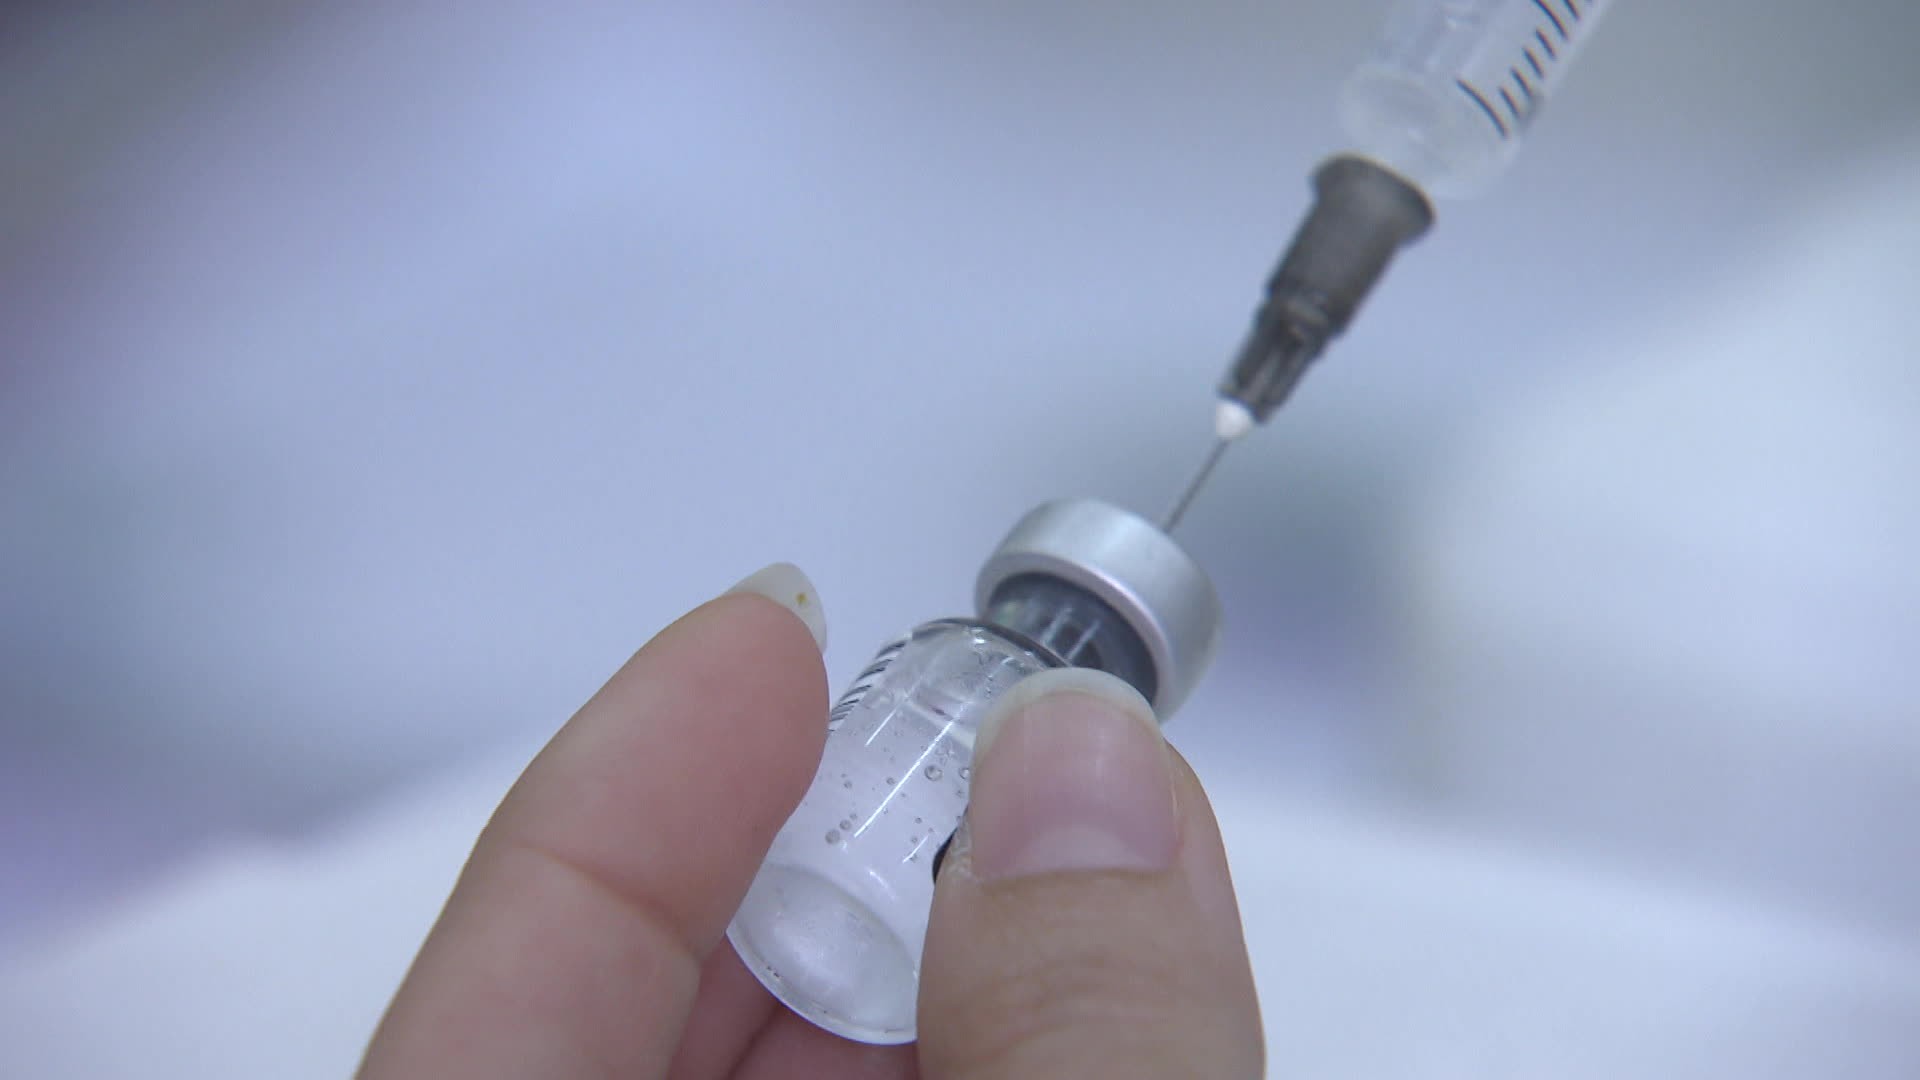 Três cidades do Alto Tietê iniciam vacinação contra Covid-19 em bebês de 6 meses a 2 anos nesta quinta-feira